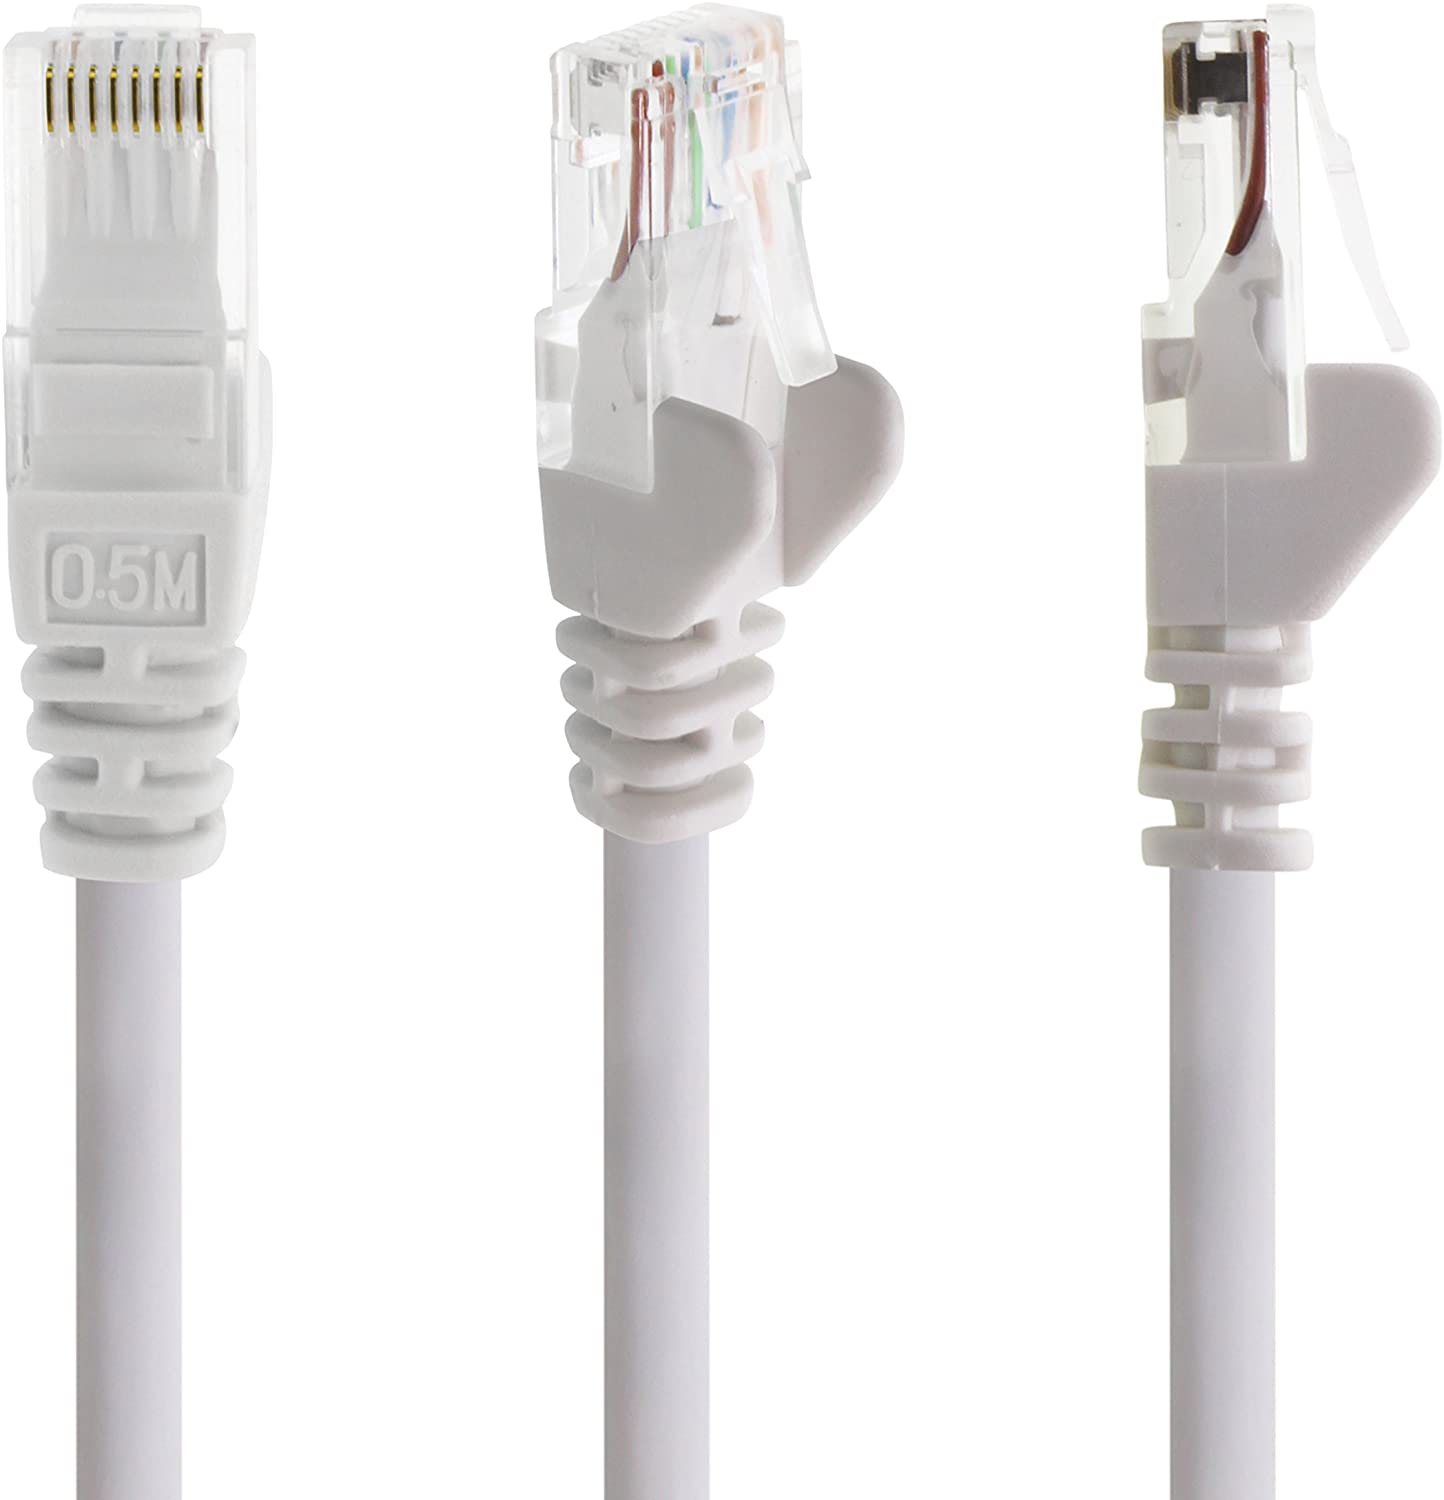 RJ45 Ethernet Gigabit Lan network cable 1aTTack.de 5 pieces 0,5m yellow 1000Mbit/s patch cable UTP compatible with CAT.5 CAT.5e CAT.7 